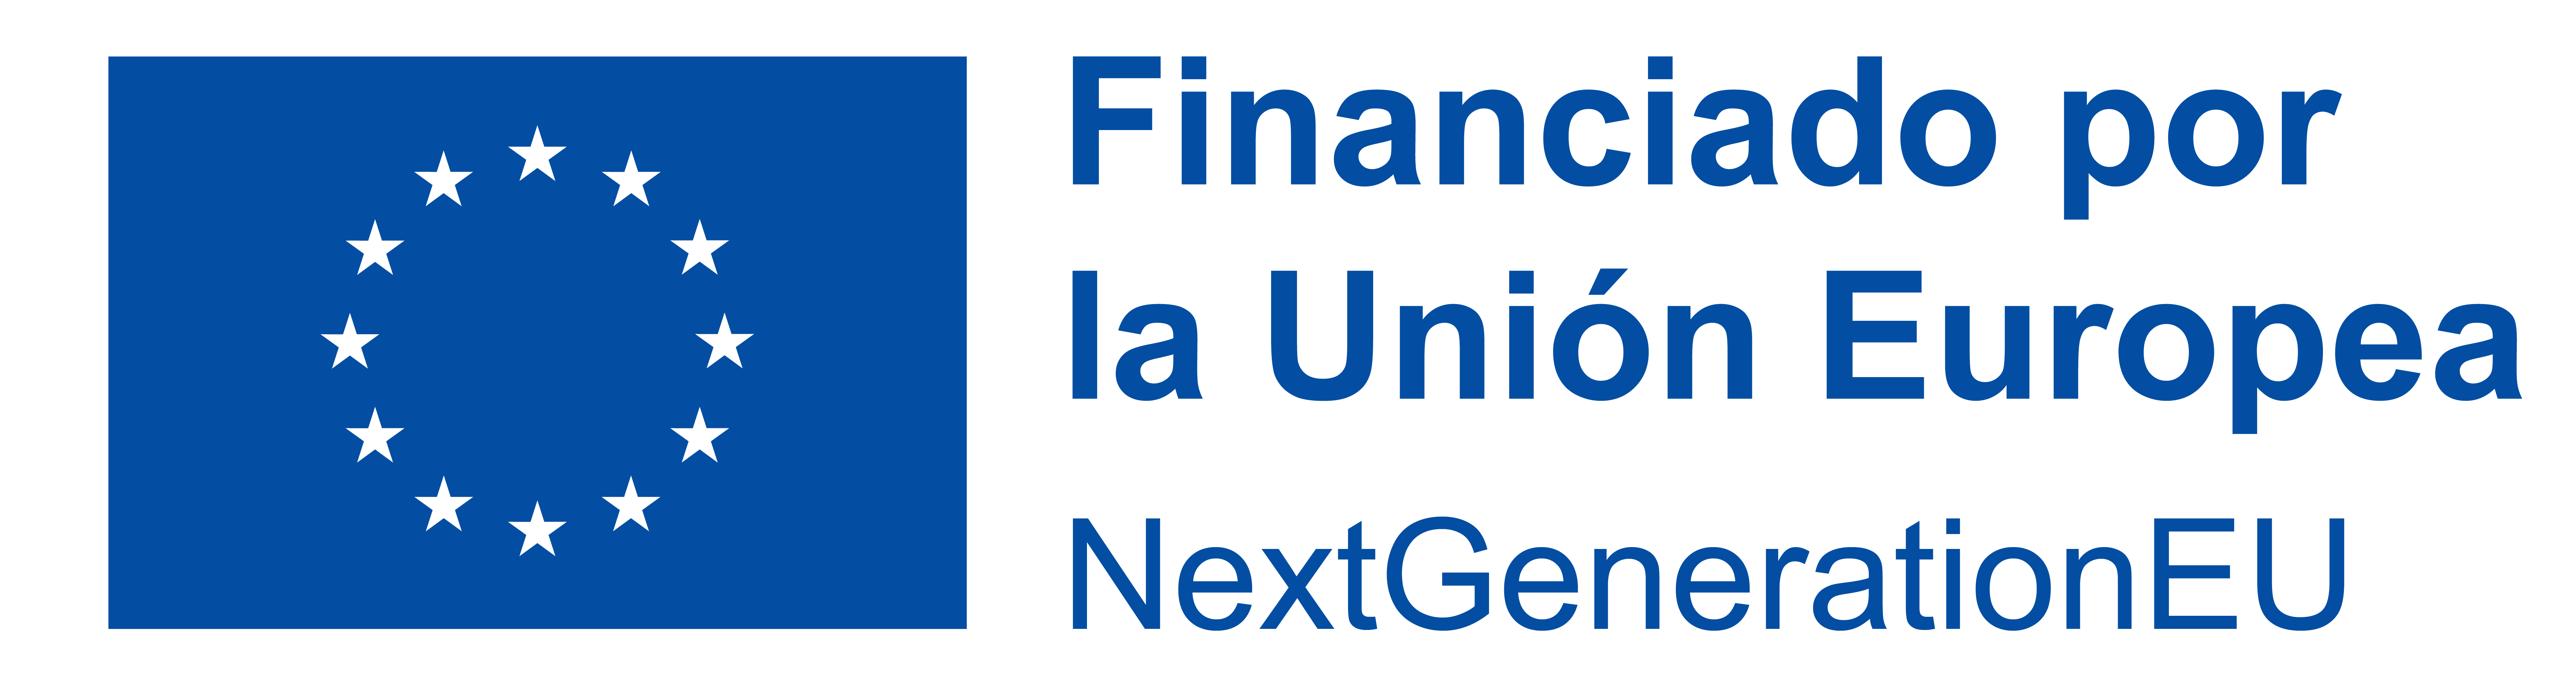 Logotipo del Financiado por la Unión Europea.